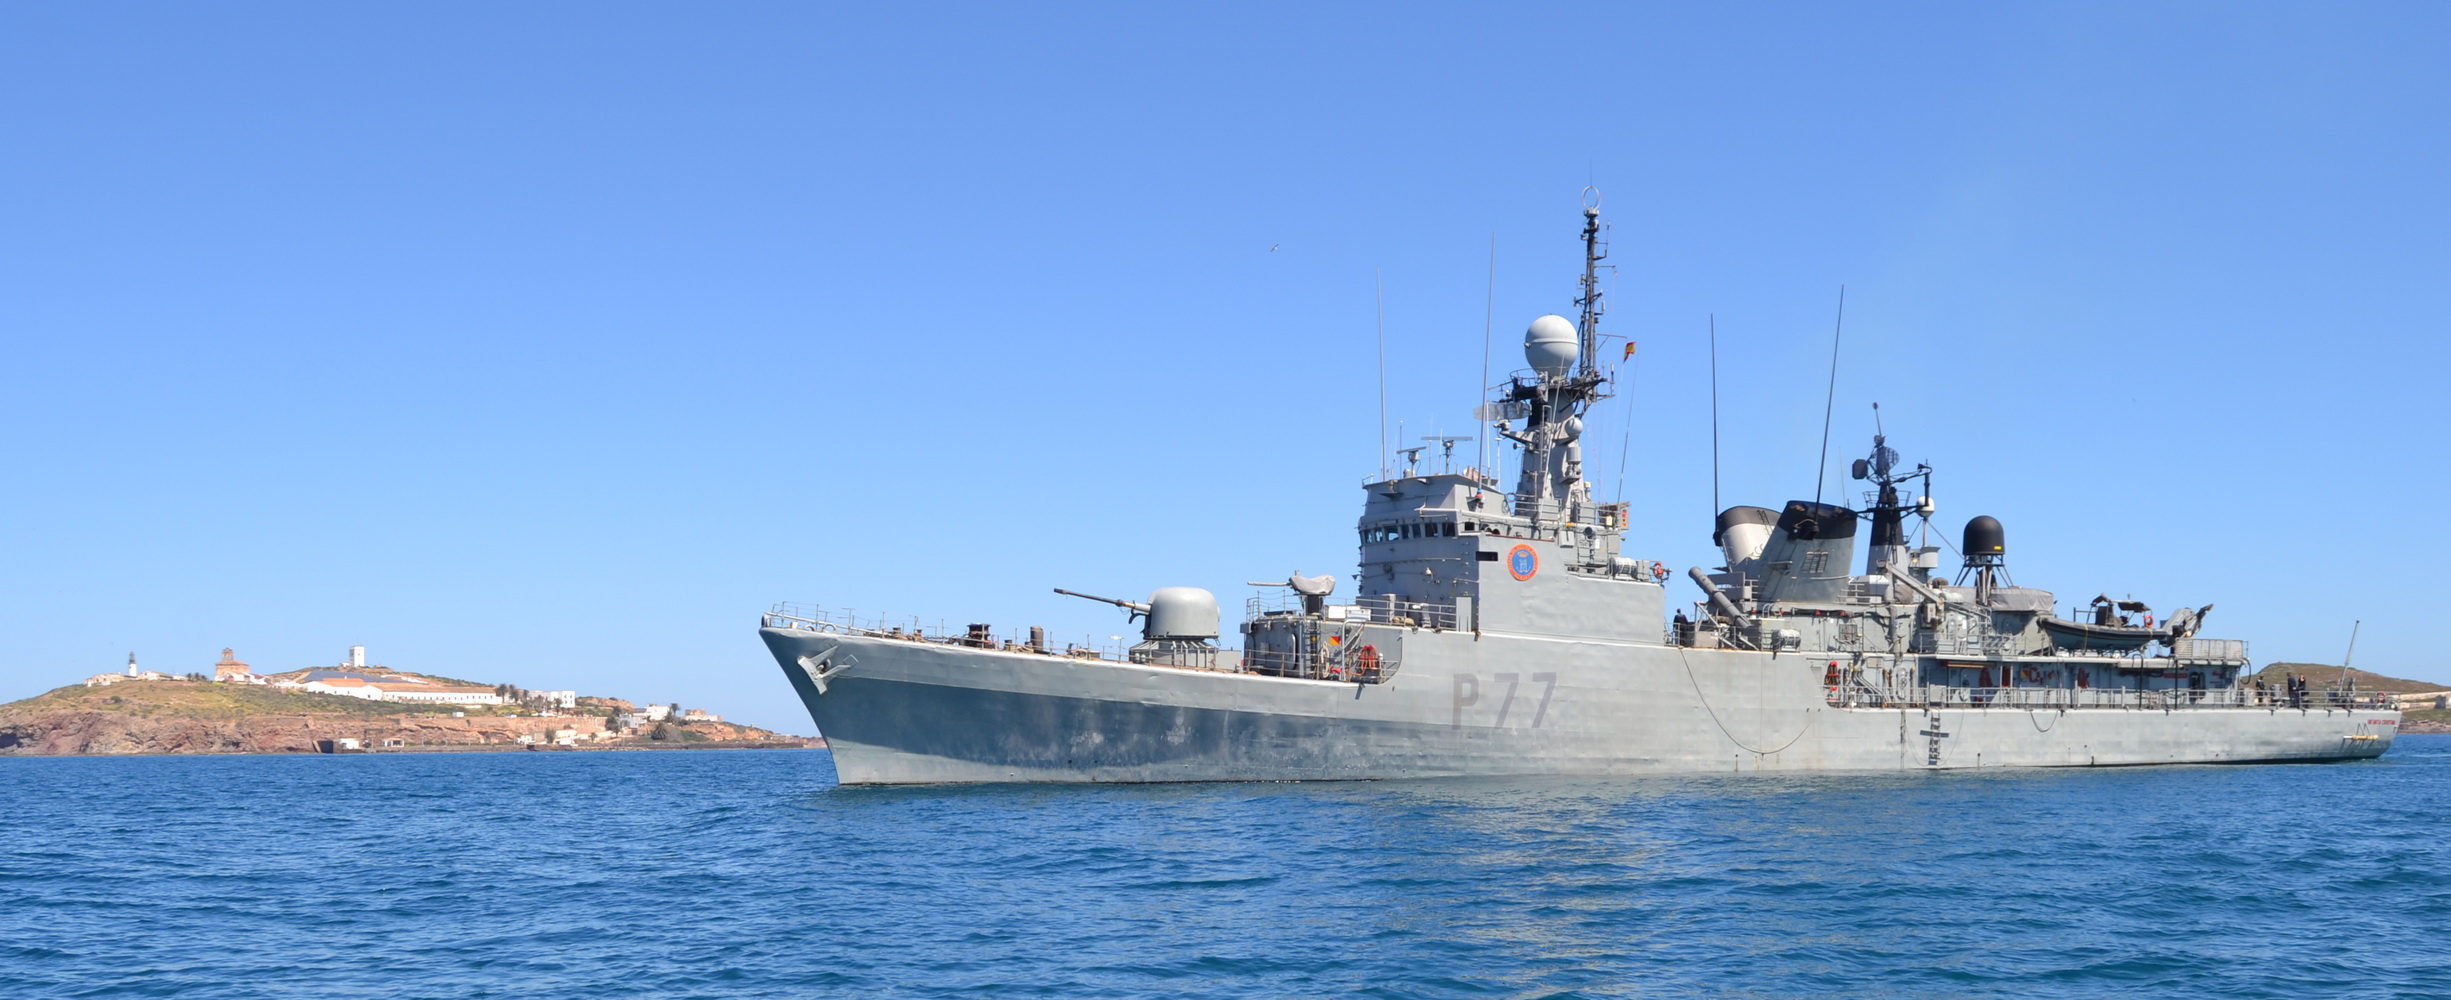 El patrullero de la Armada “Infanta Cristina” participa en el ejercicio de seguridad marítima y alerta antiterrorista en el puerto de Motril